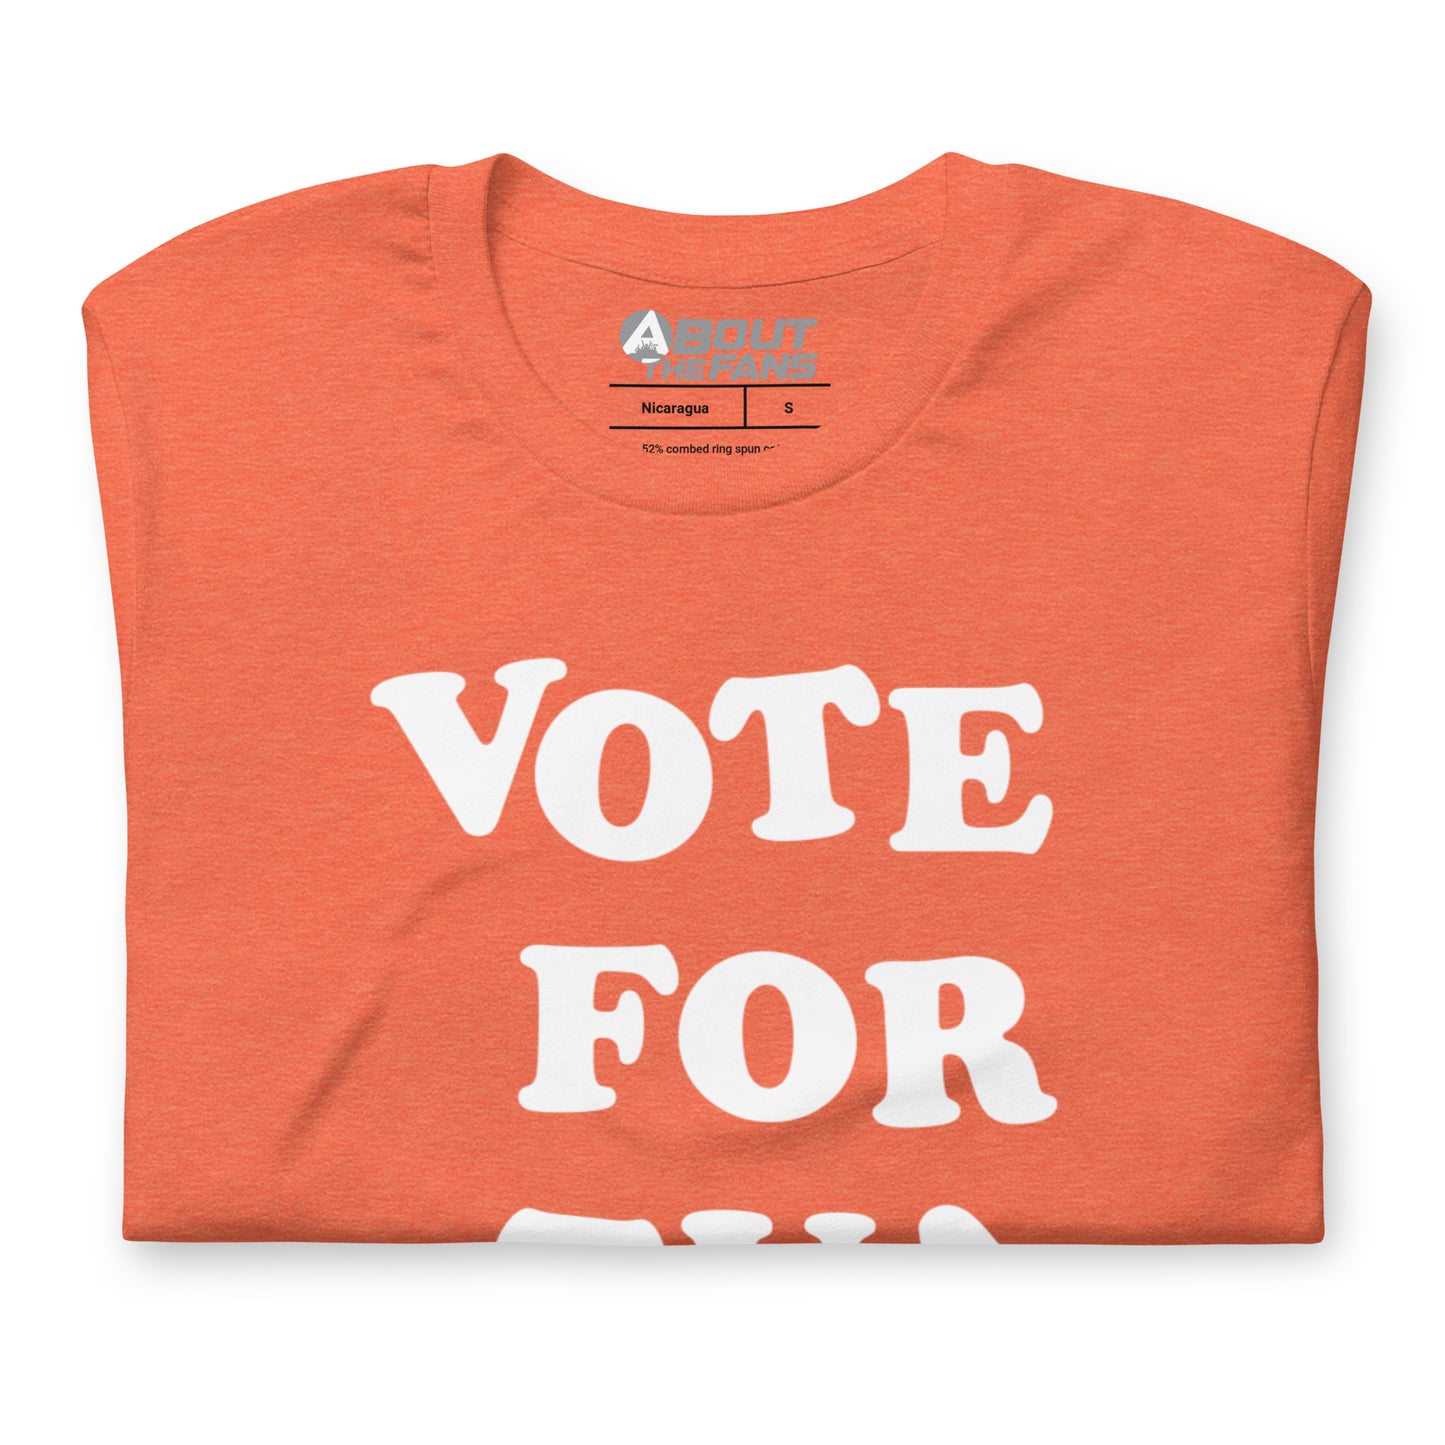 Vote For Tua Shirt